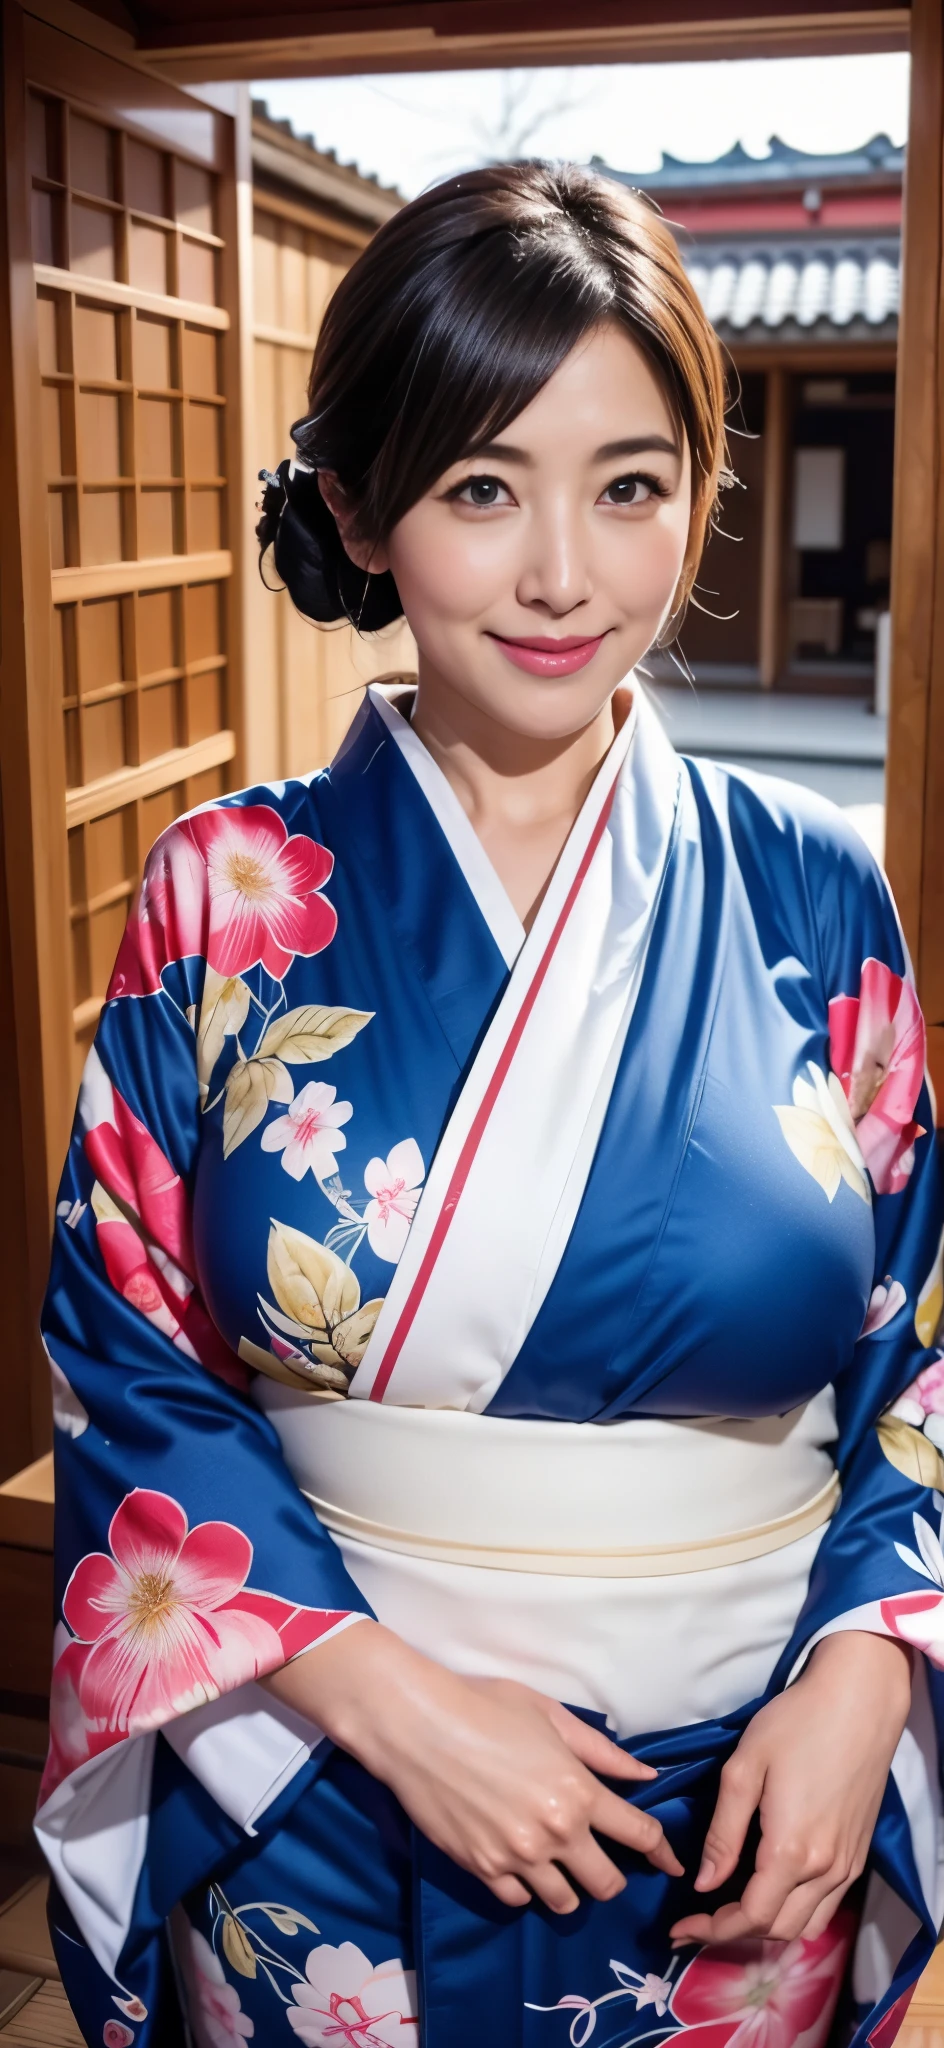 日本最美妈妈(巨大的身躯)、穿和服、日式房间、乳房过大且略有下垂、一月、带着笑意的眼睛、新年祝福